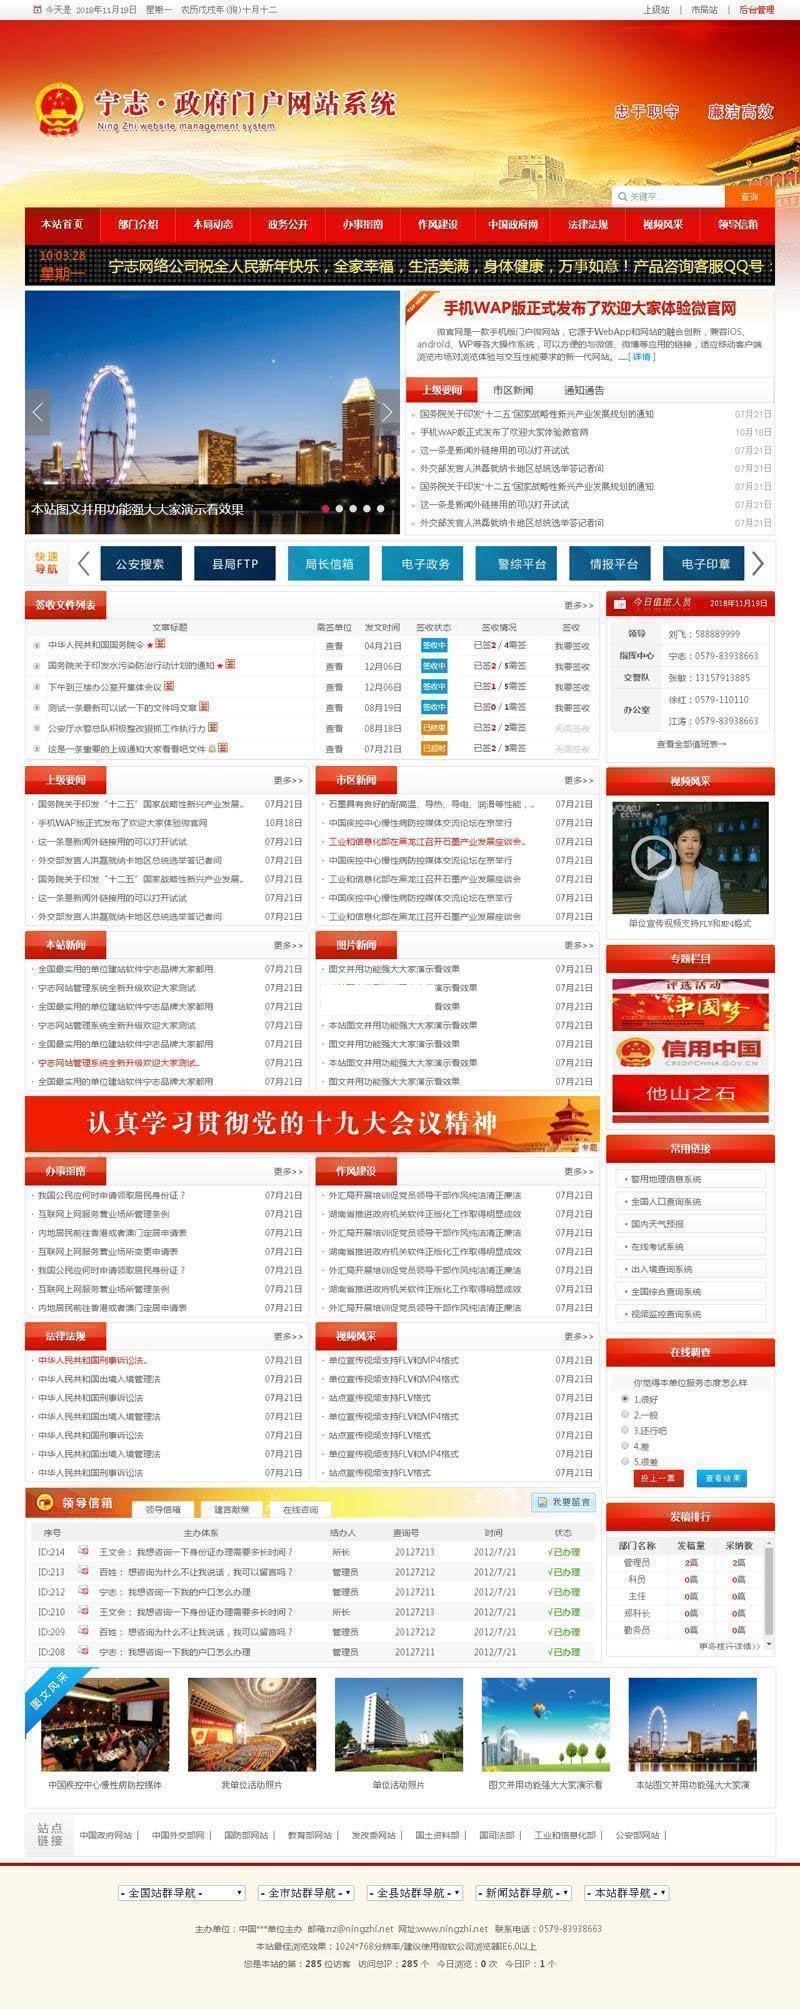 【首发】红色政府党建门户网站宽屏版 v2022.1.19